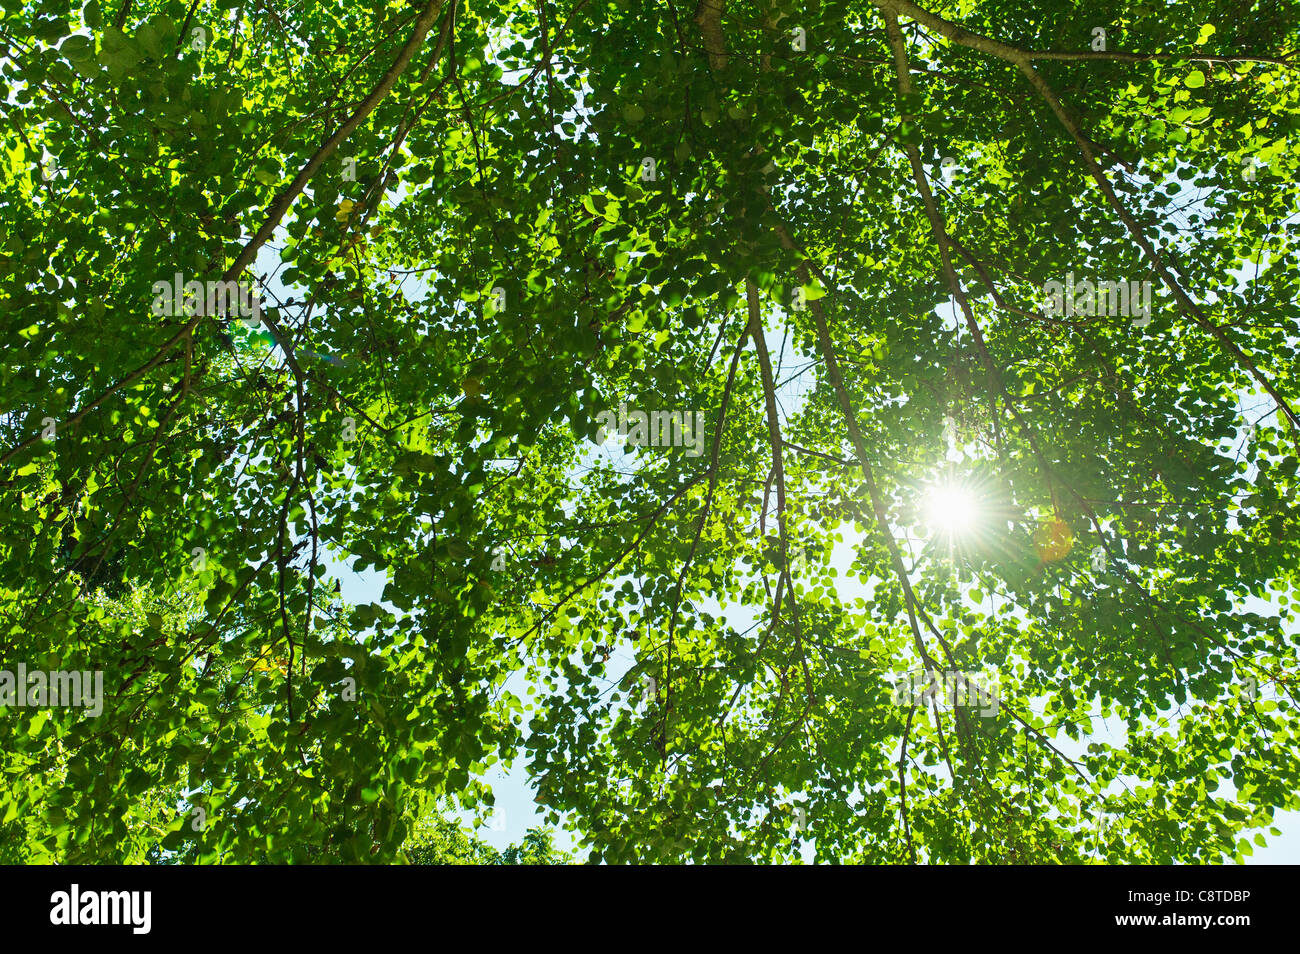 USA, New York State, Old Westbury, Sun lighting through tree Stock Photo